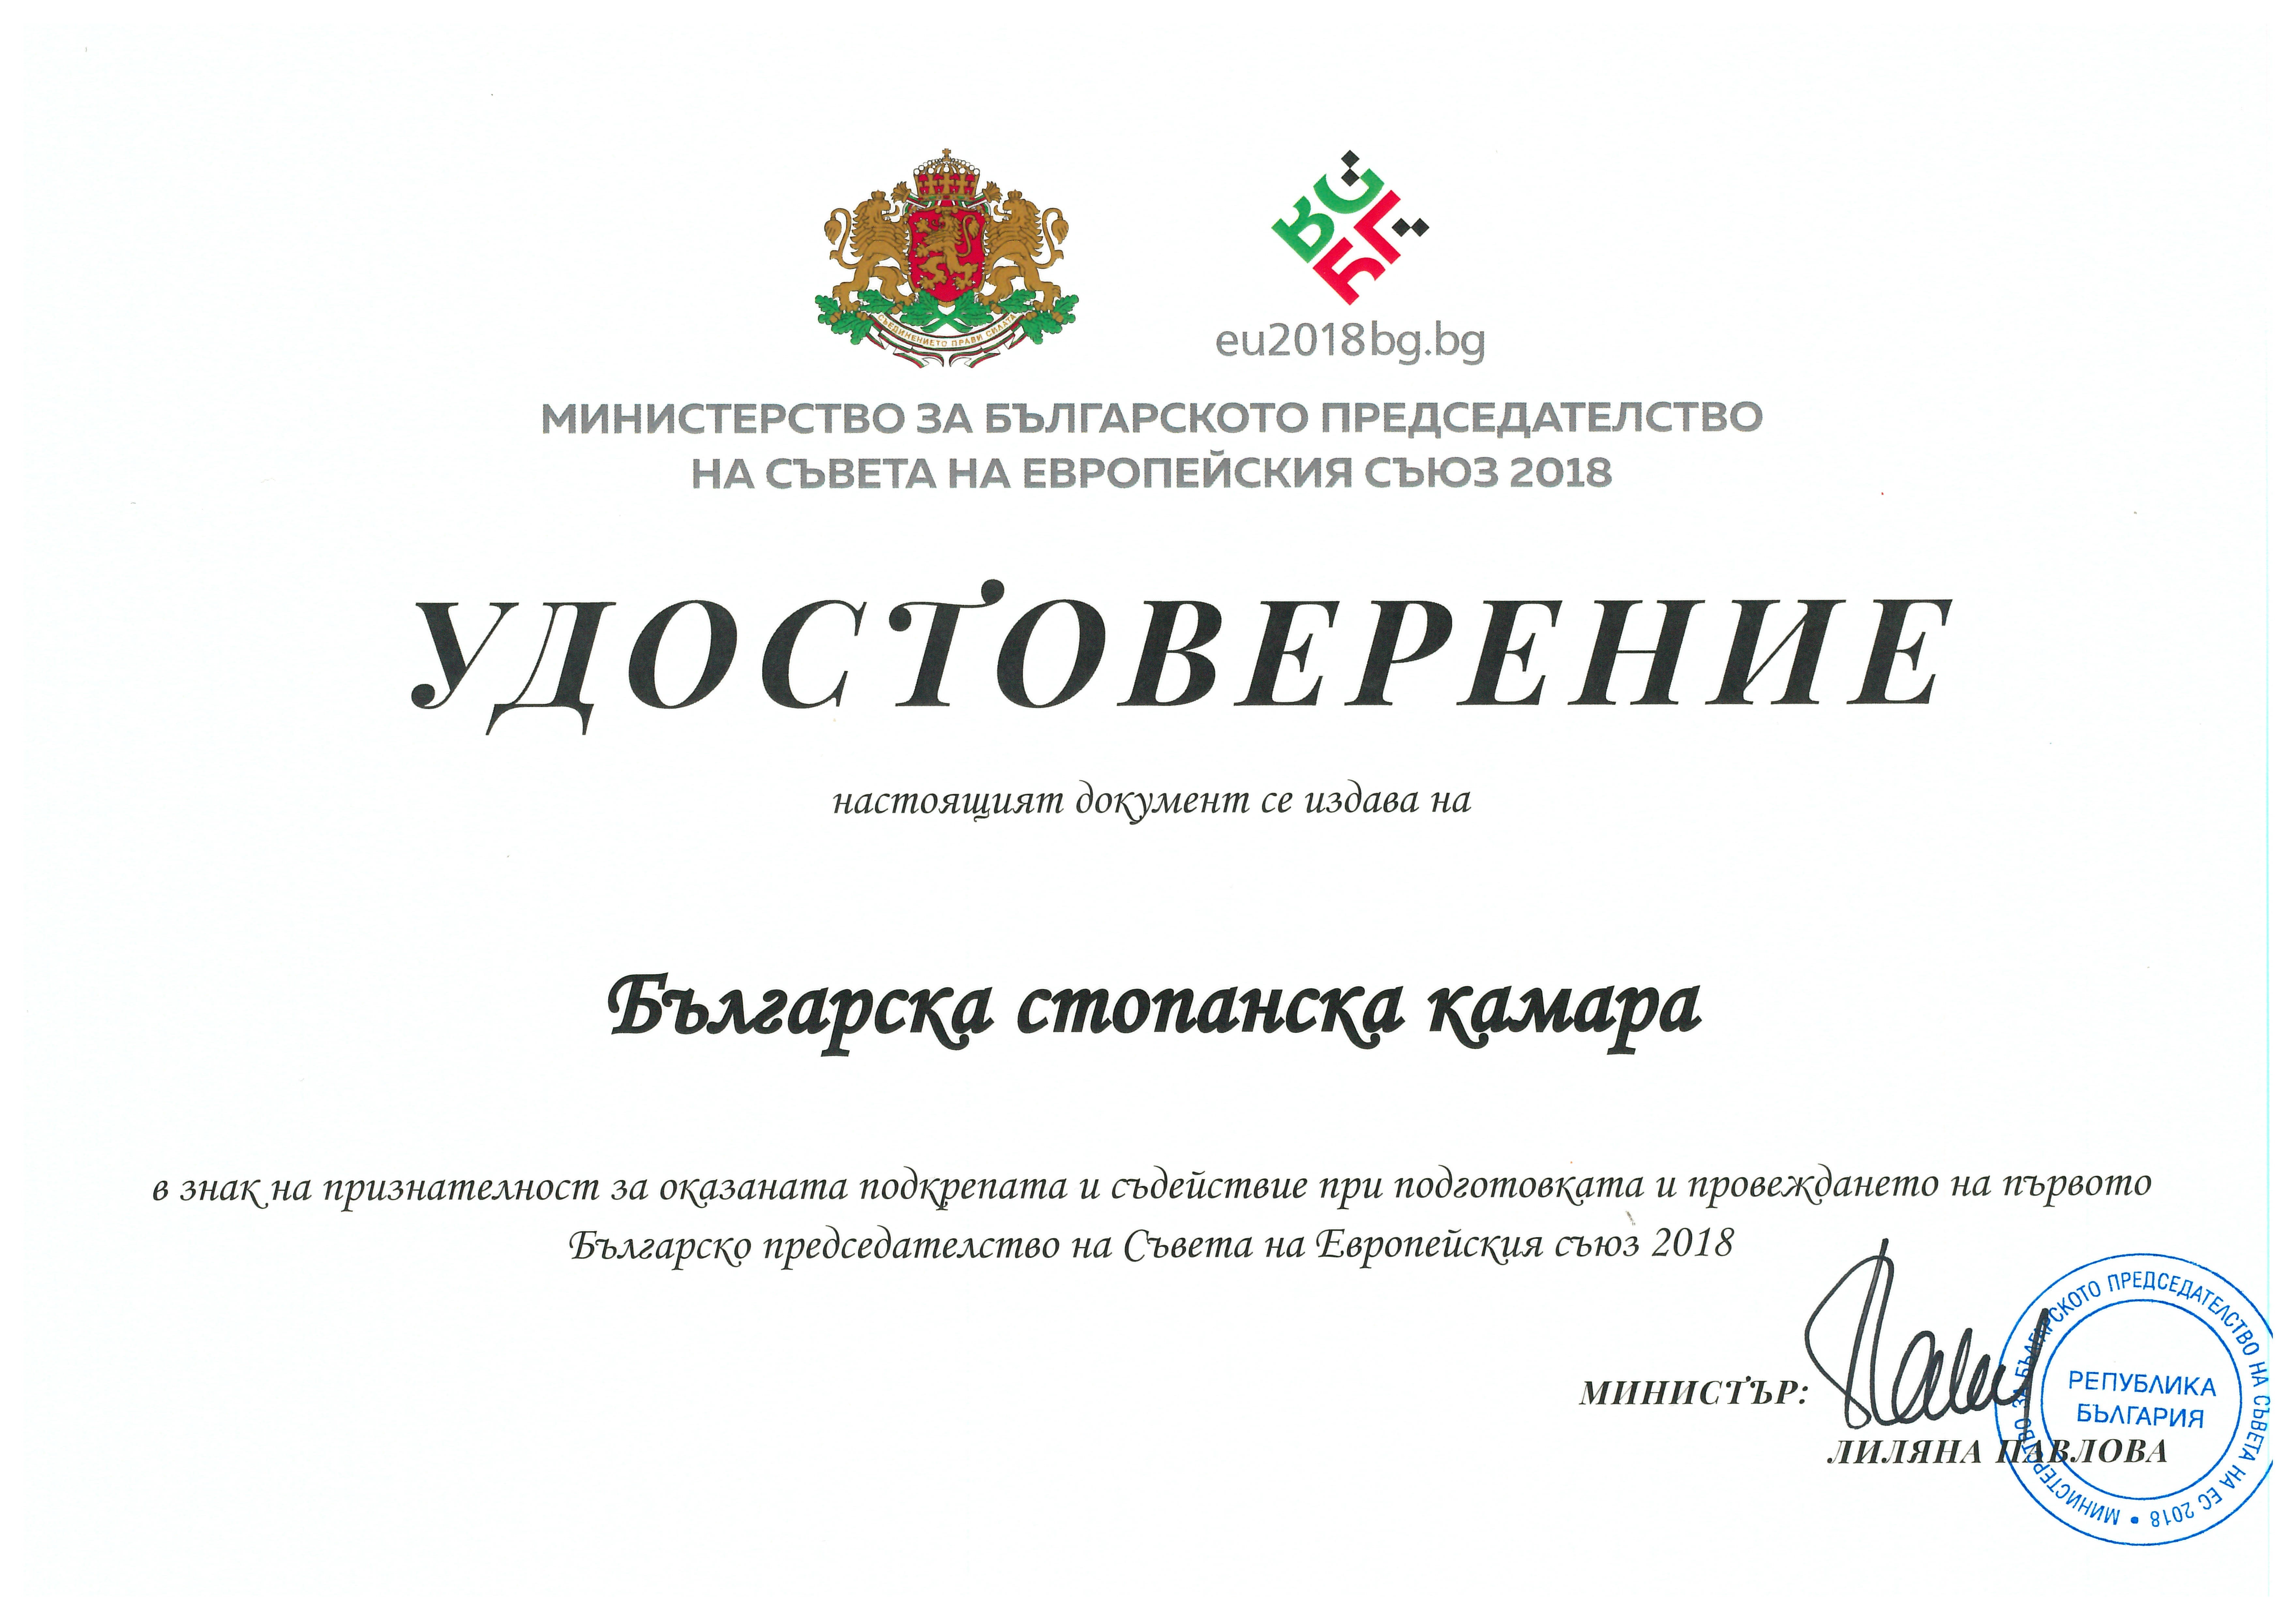 БСК изпълни успешно своята програма в рамките на Българското председателство на Съвета на ЕС